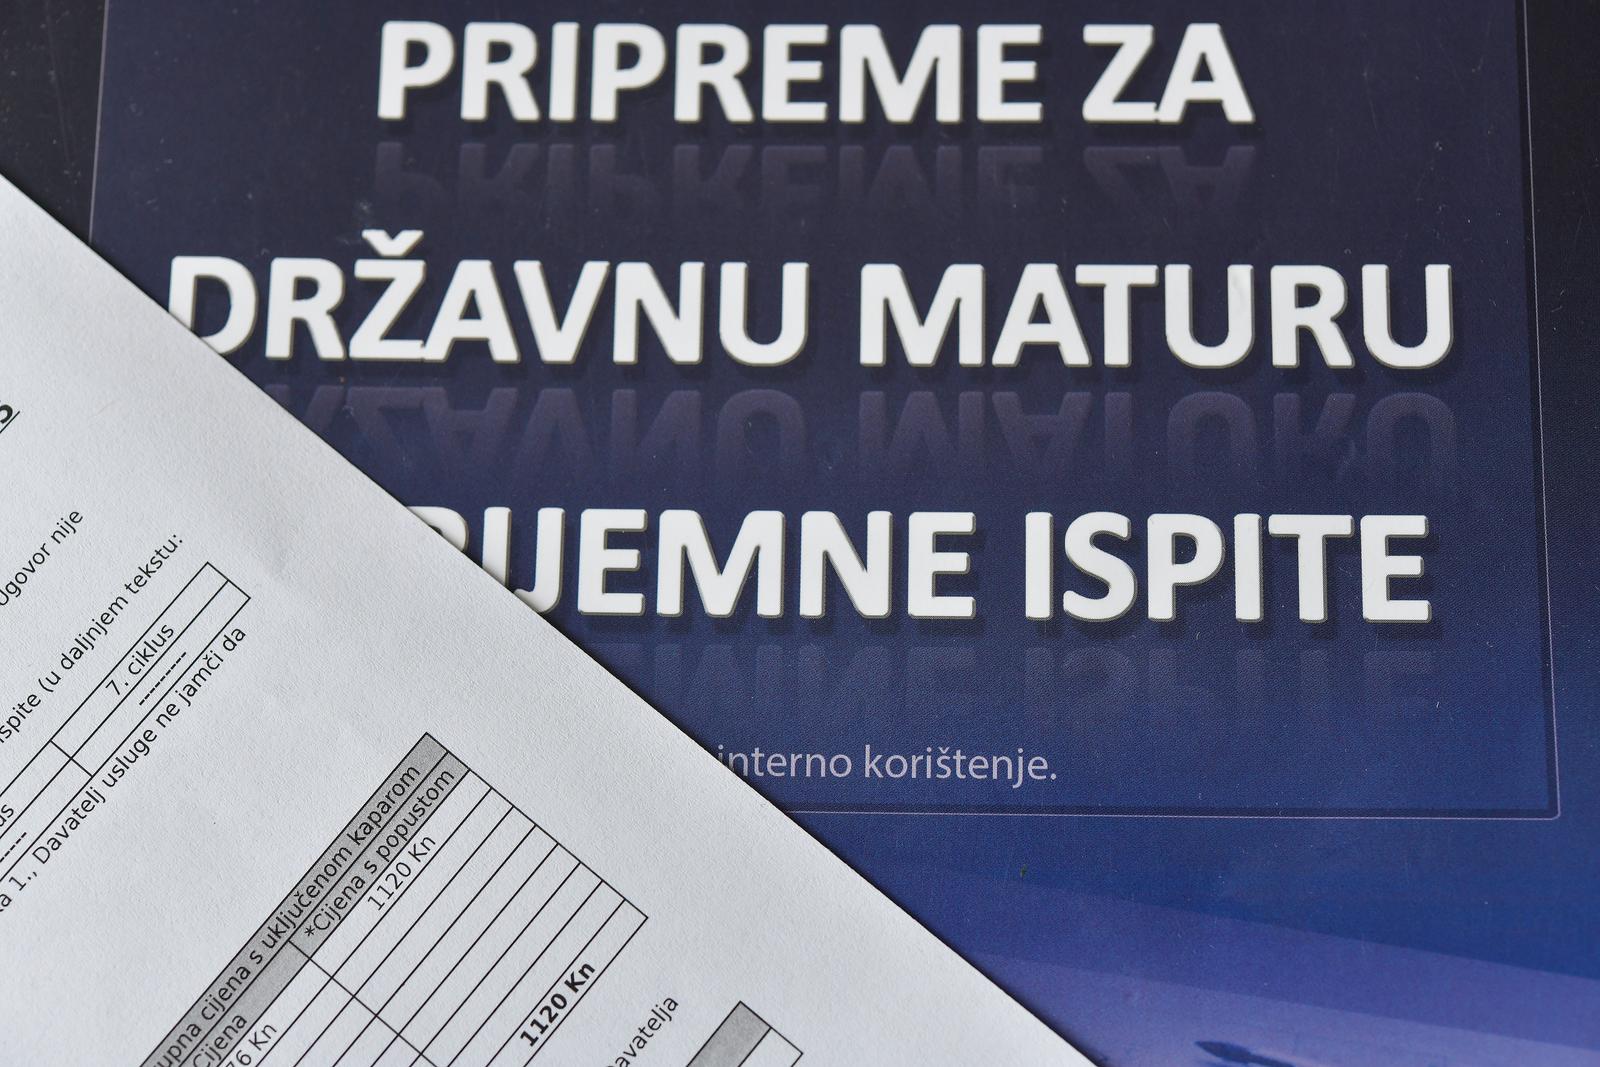 24.06.2022., Zagreb - Ilustracija za pripreme i polaganje ispita drzavne mature. Photo: Sandra Simunovic/PIXSELL